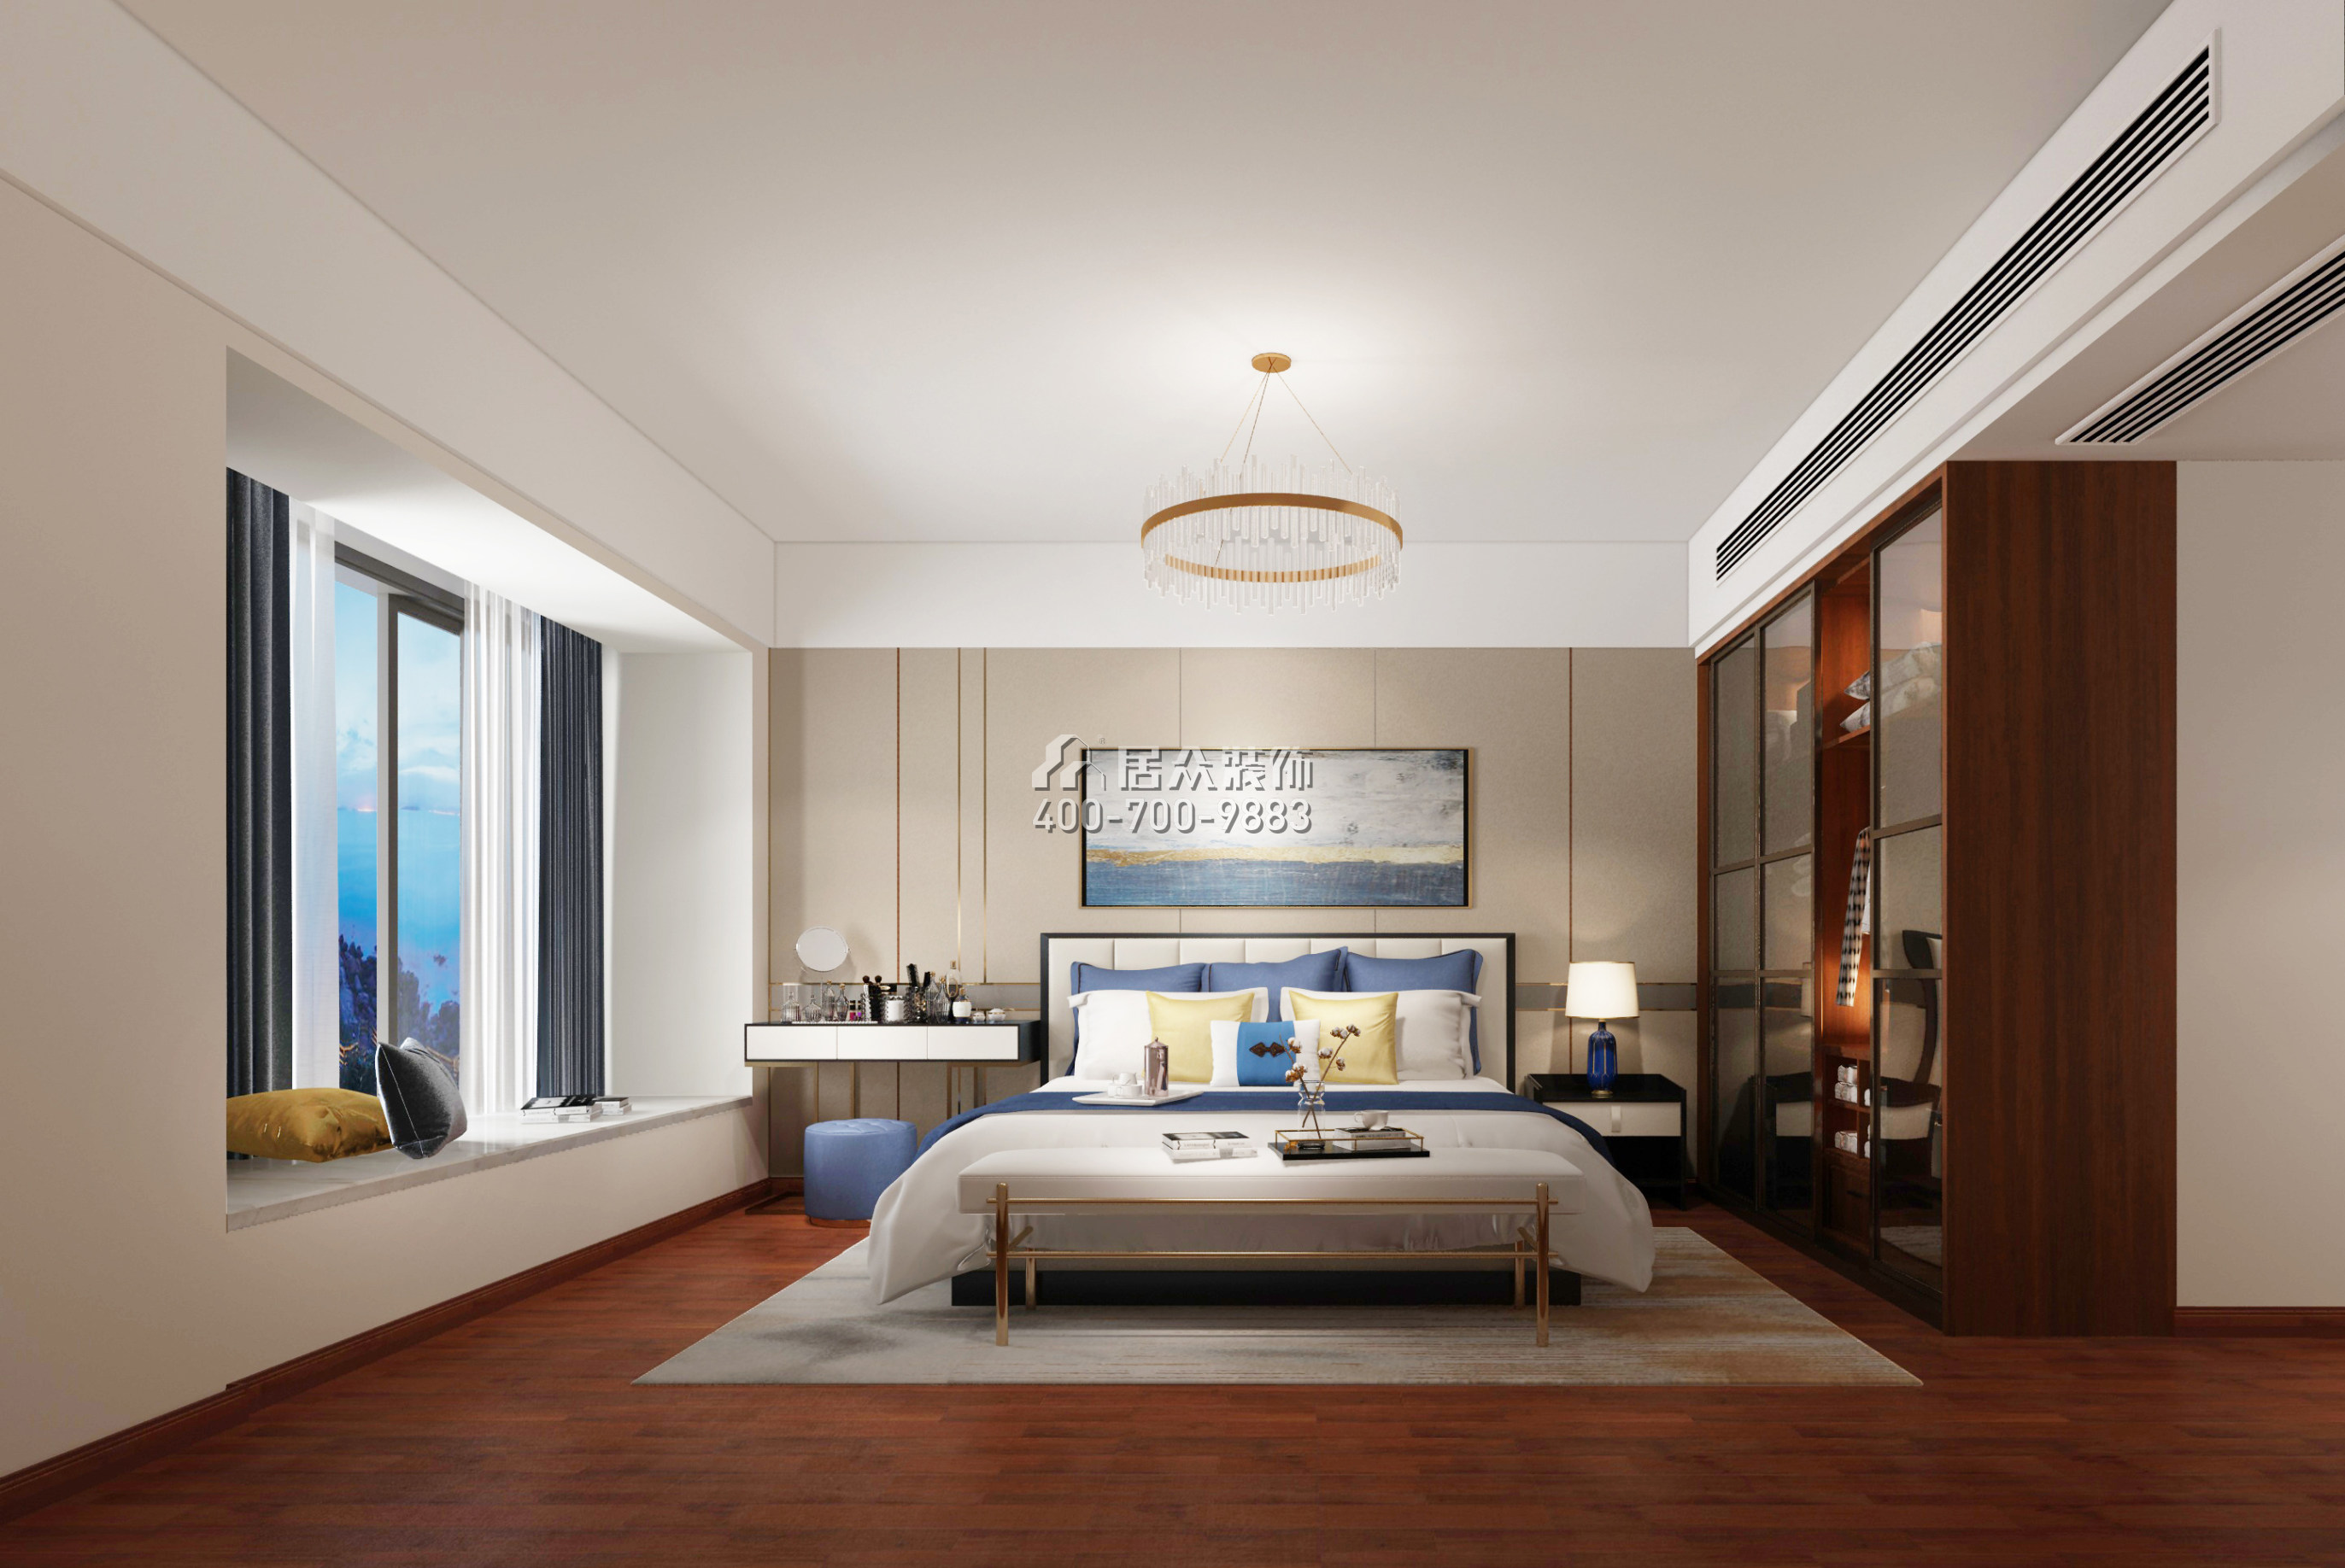 五洲花城二期225平方米现代简约风格平层户型卧室装修效果图